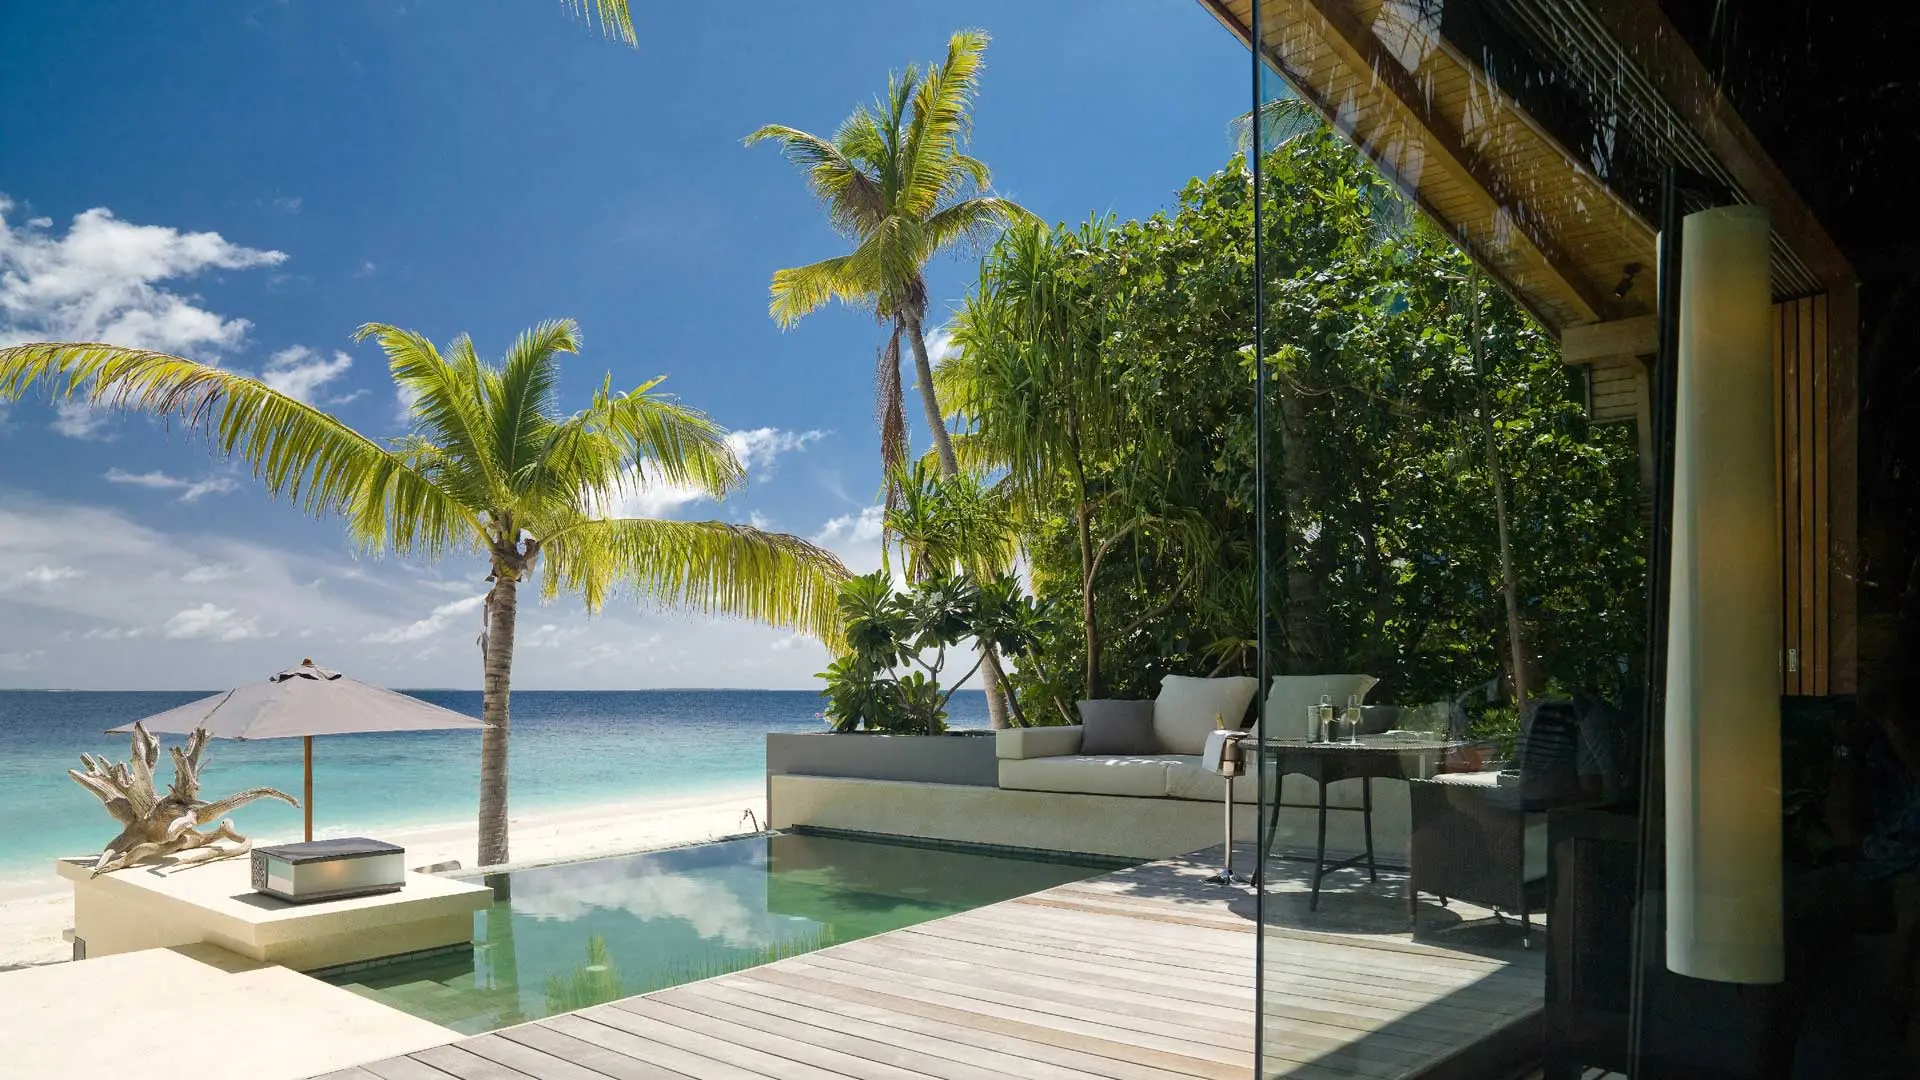 Hotel review Accommodation' - Park Hyatt Maldives Hadahaa - 11